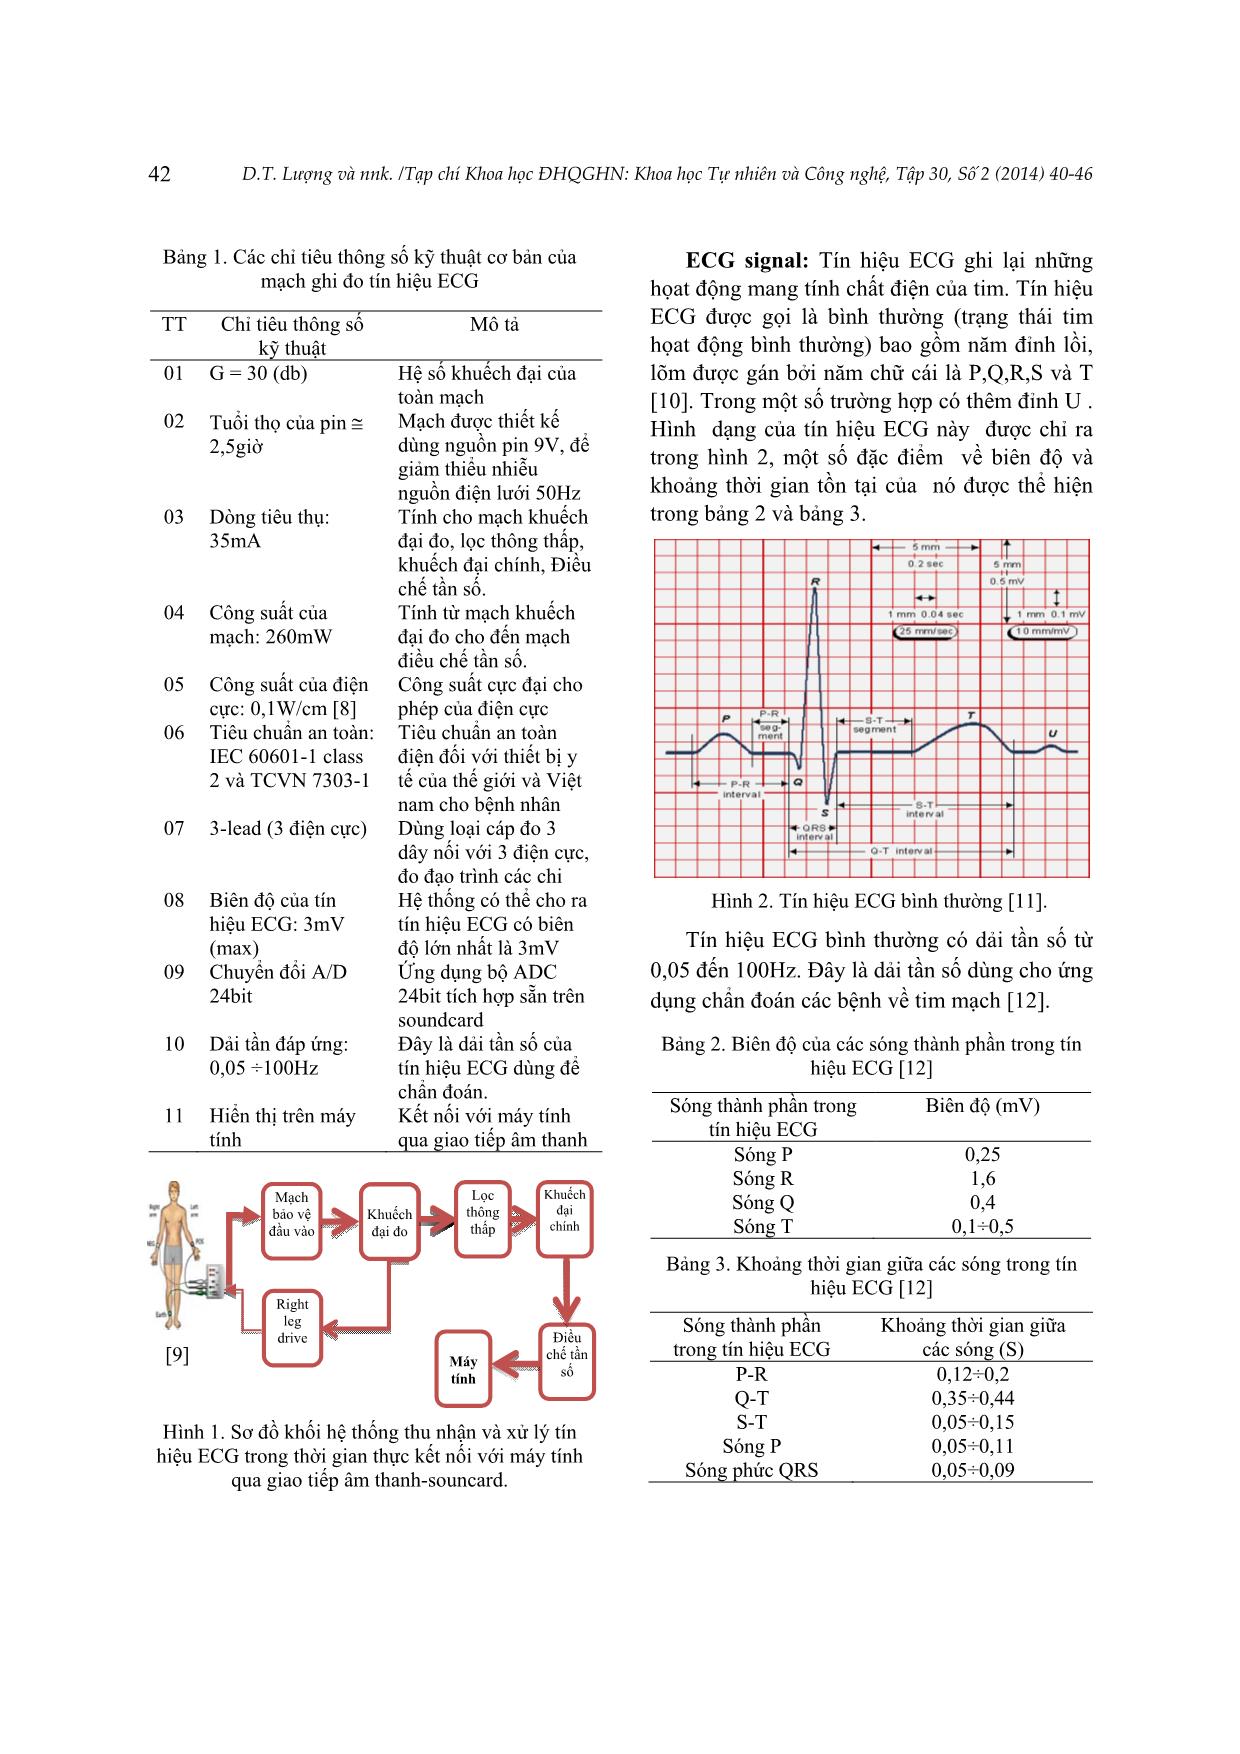 Thiết kế hệ thống thu nhận tín hiệu điện tâm đồ trong thời gian thực dựa trên giao tiếp âm thanh - Soundcard tích hợp trong máy tính trang 3